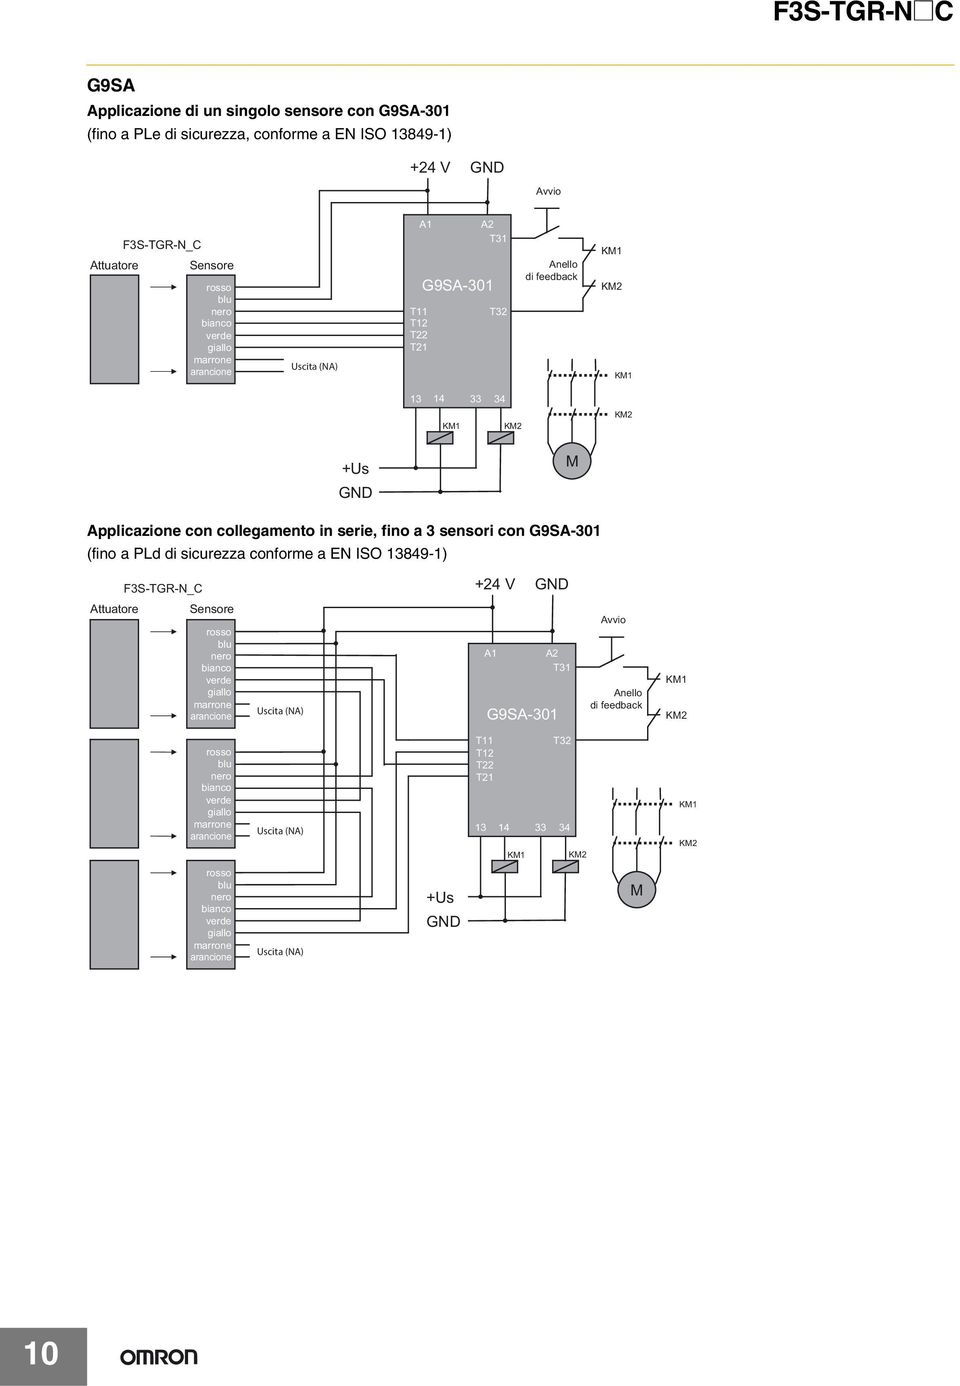 Applicazione con collegamento in serie, fino a sensori con G9SA-01 (fino a PLd di sicurezza conforme a EN ISO